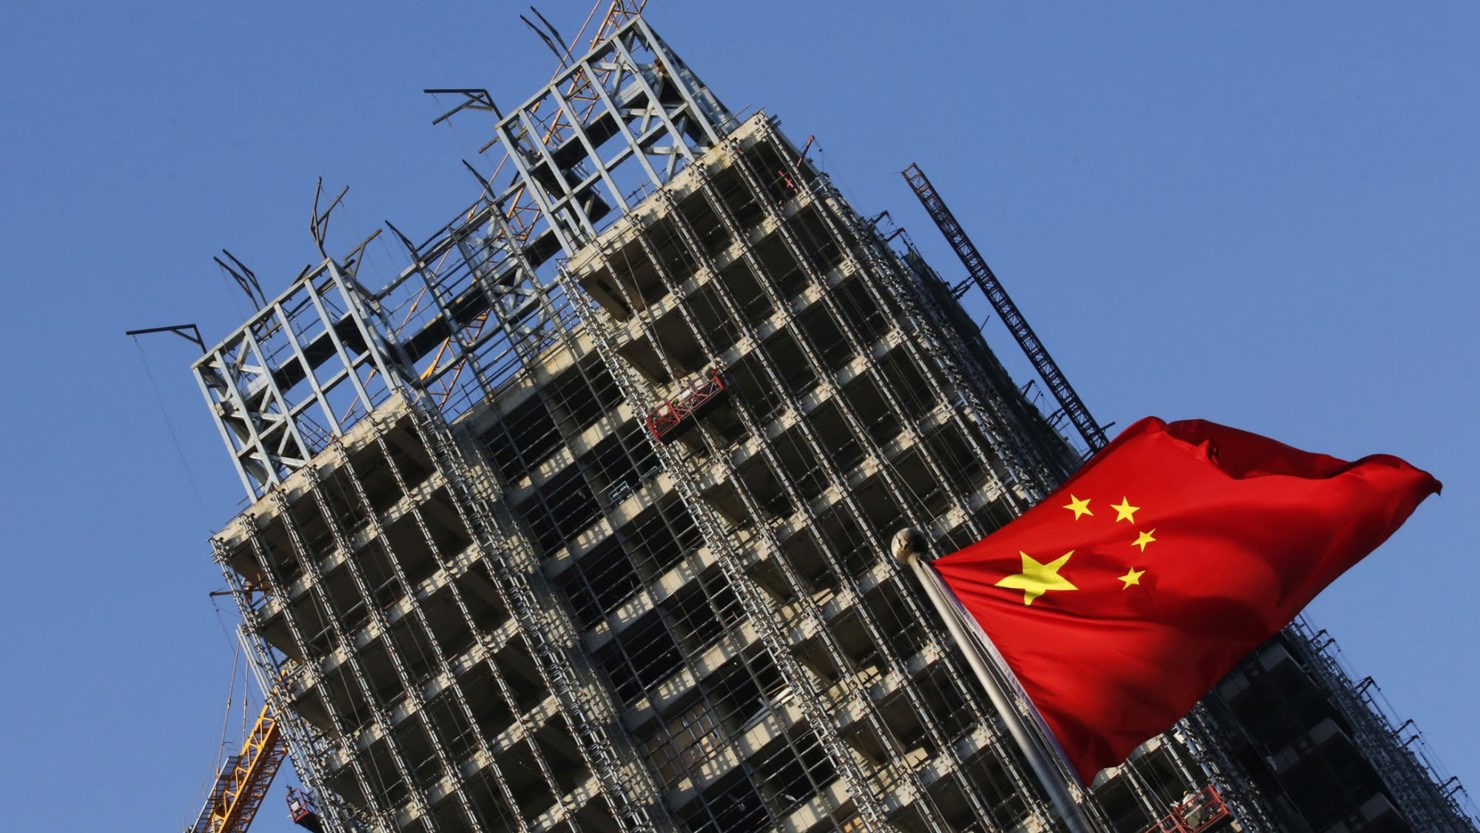 Chính phủ Trung Quốc đã đưa ra nhiều biện pháp kiểm soát đầu cơ bất động sản nhằm ngăn chặn nguy cơ bong bóng và ổn định thị trường này. 